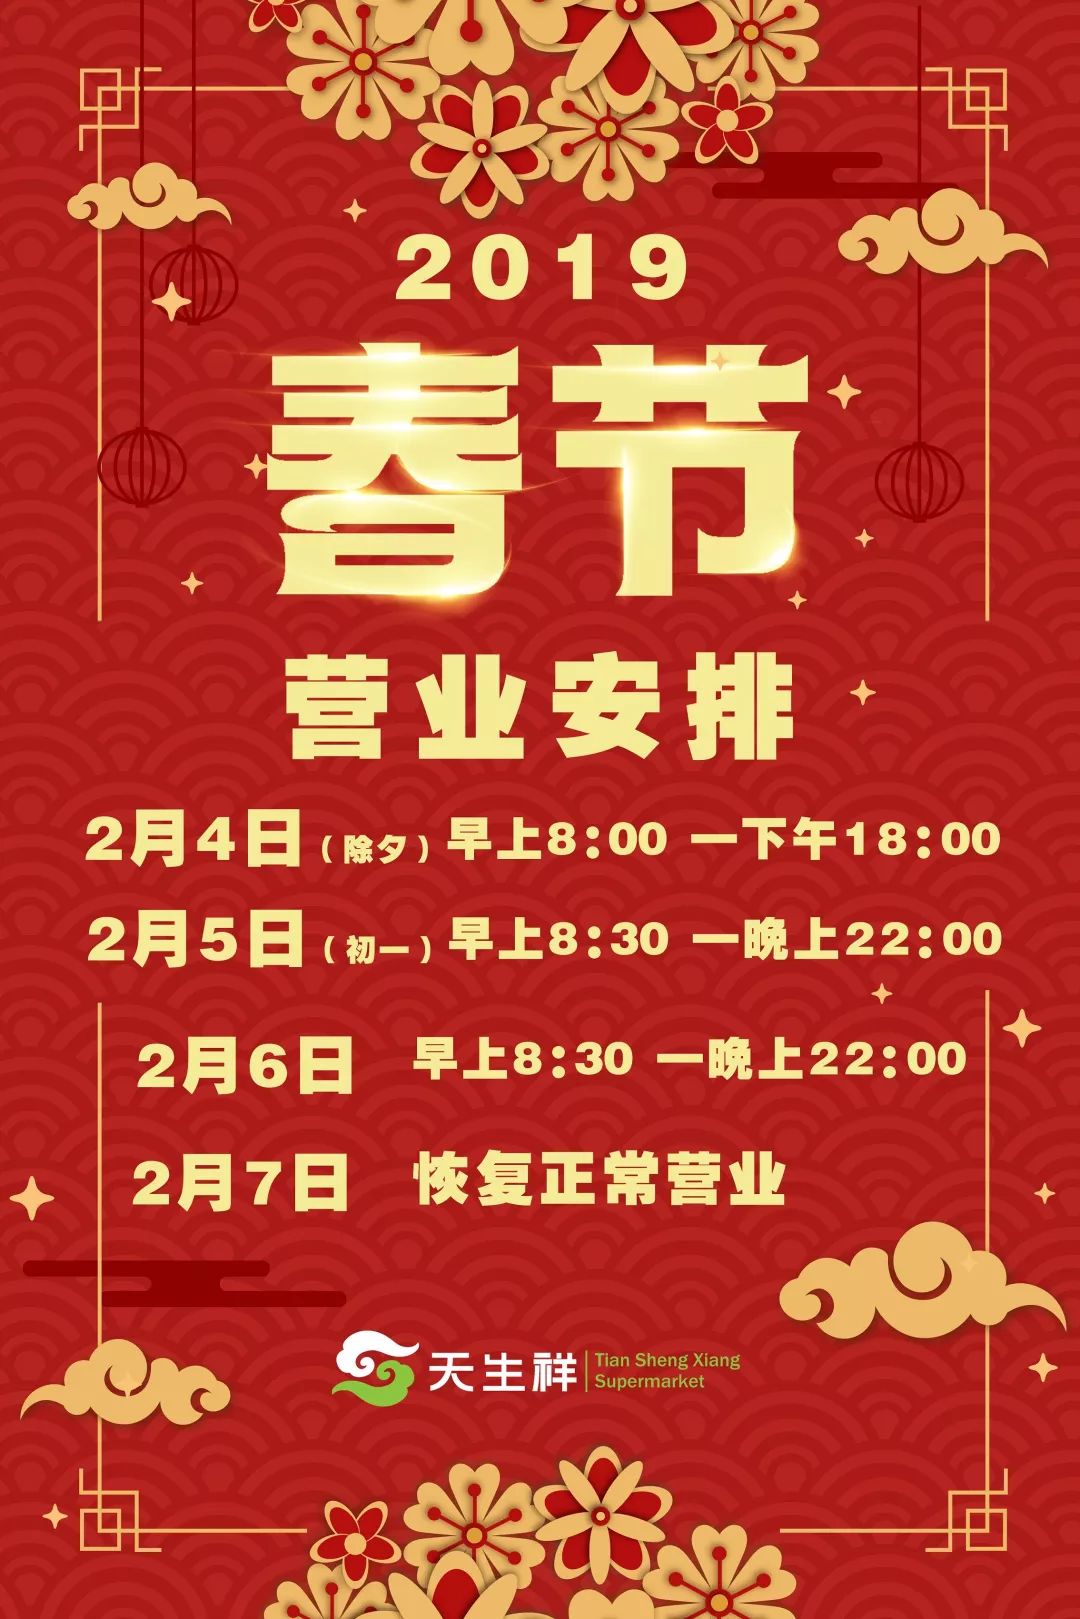 2019年天生祥超市春节营业时间安排